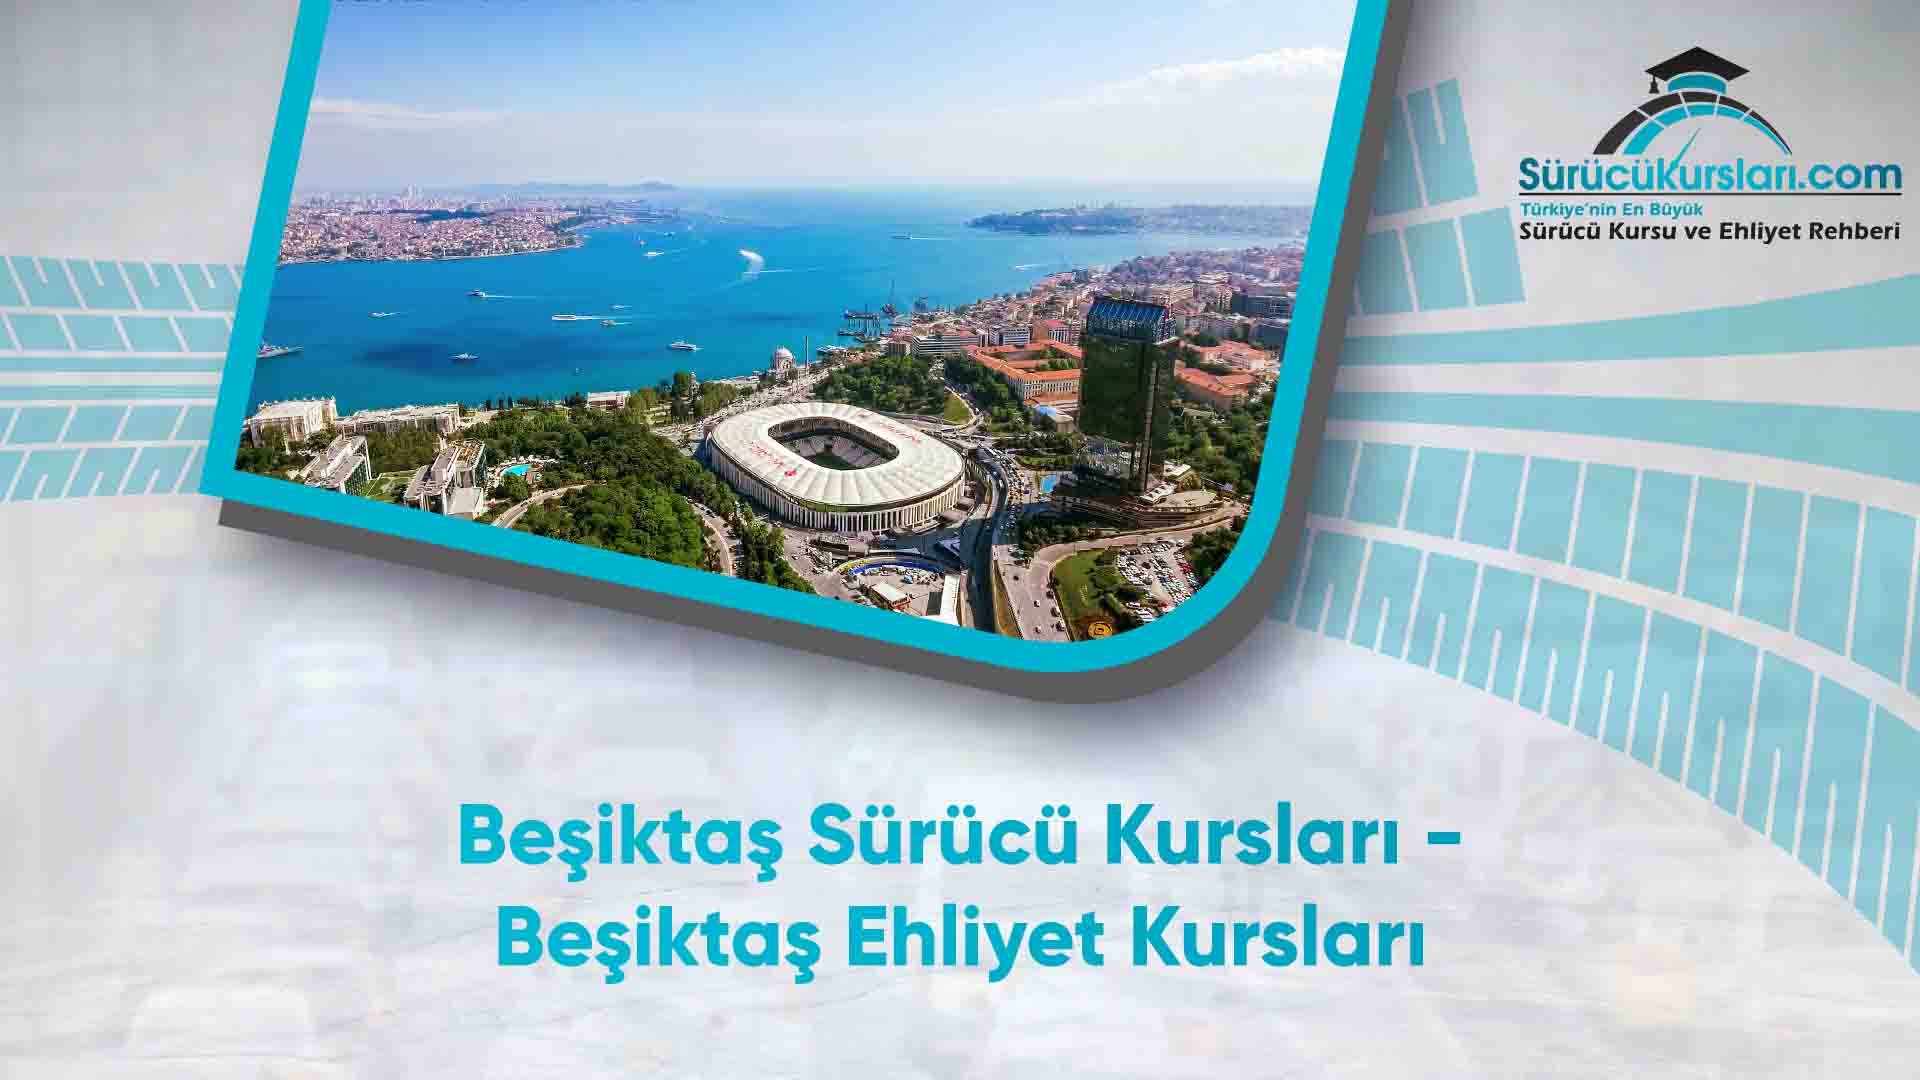 Beşiktaş Sürücü Kursları - Beşiktaş Ehliyet Kursları